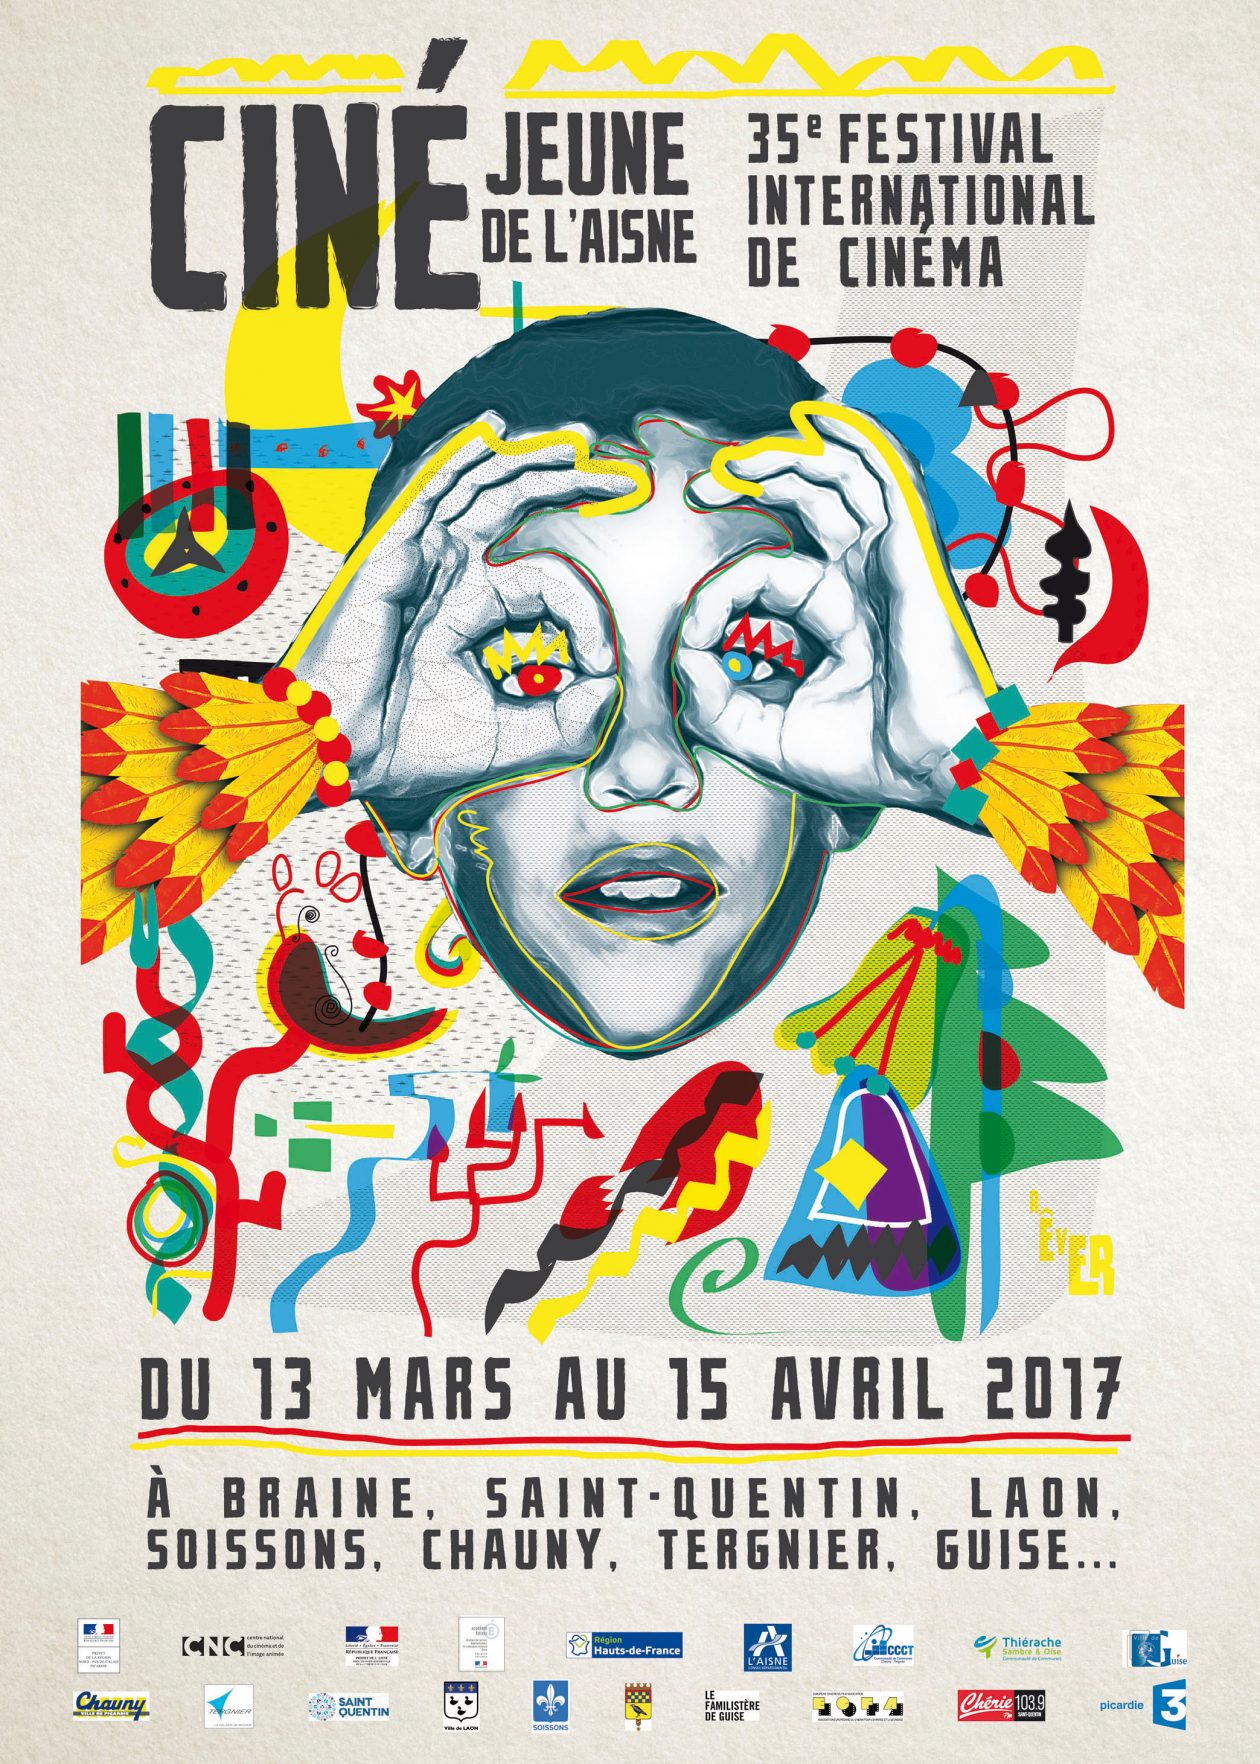 Le 35e Festival Ciné-Jeune de l’Aisne en 1 image !